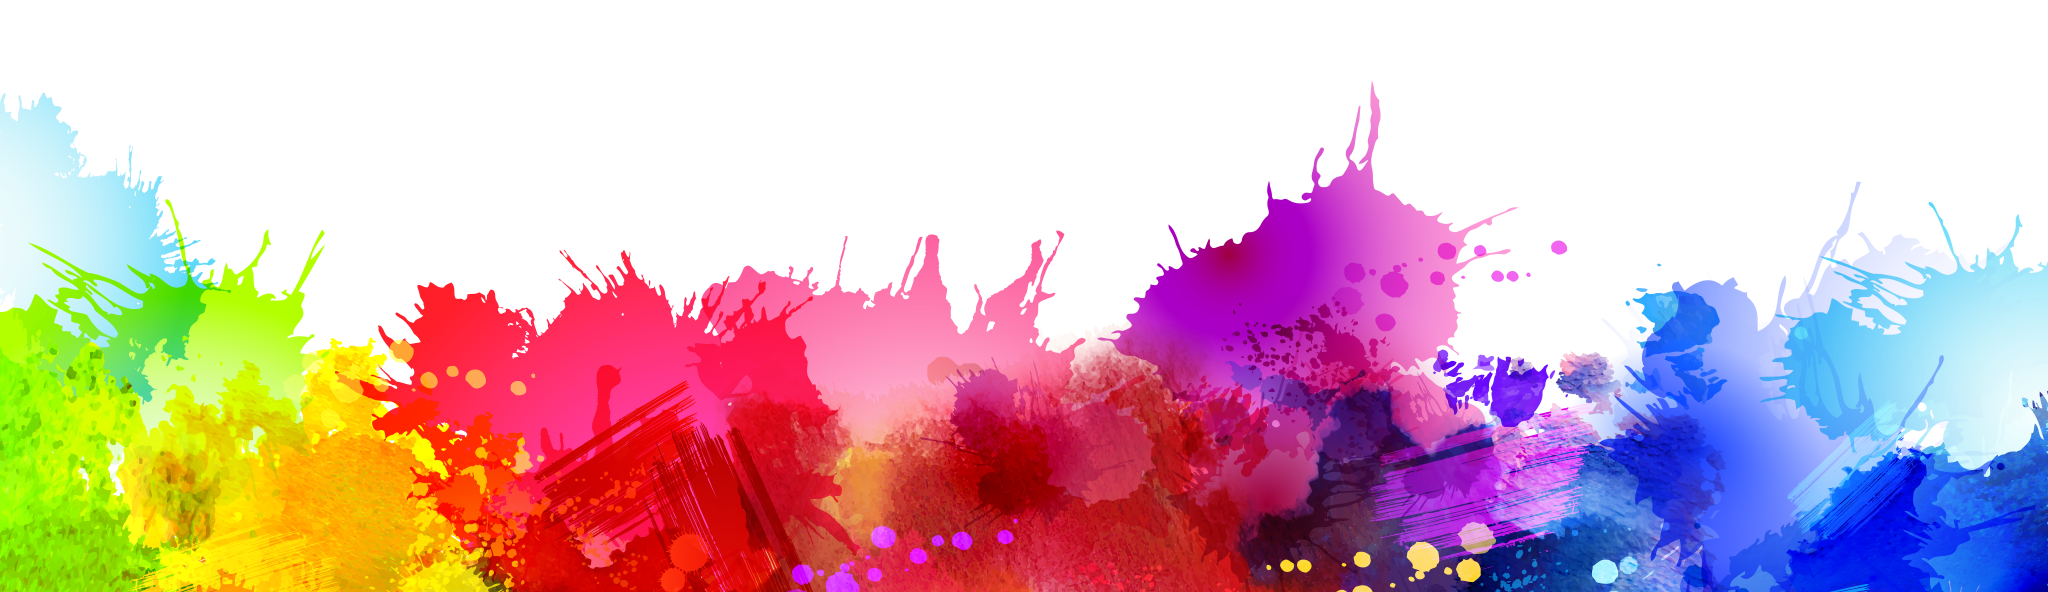 Tải miễn phí Holi Color Background ảnh PNG tại PNG Mart ngay hôm nay! Với nền màu sắc tươi sáng và rực rỡ, bạn sẽ không còn phải tốn công tìm kiếm nữa. Hãy cùng cải thiện trải nghiệm của mình bằng hình ảnh chất lượng cao này.